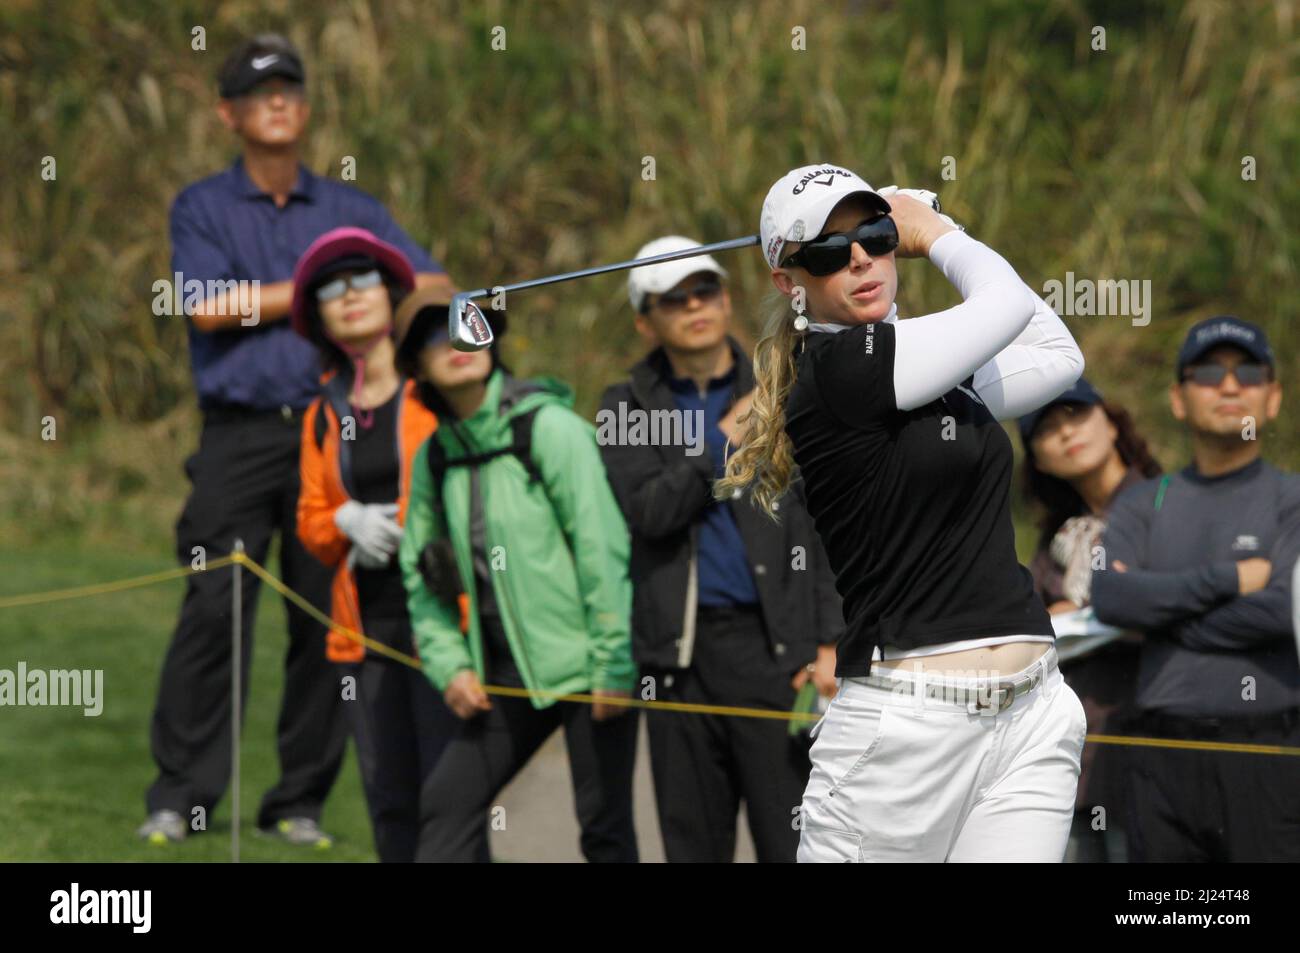 8 octobre 2011-Incheon, Corée du Sud-PRESSEL, Morgan des Etats-Unis, joue shes tee shot sur le 3th trous pendant le championnat LPGA par Hana Bank au club de golf SKY72 à Incheon le 8 octobre 2011, Corée du Sud. Banque D'Images